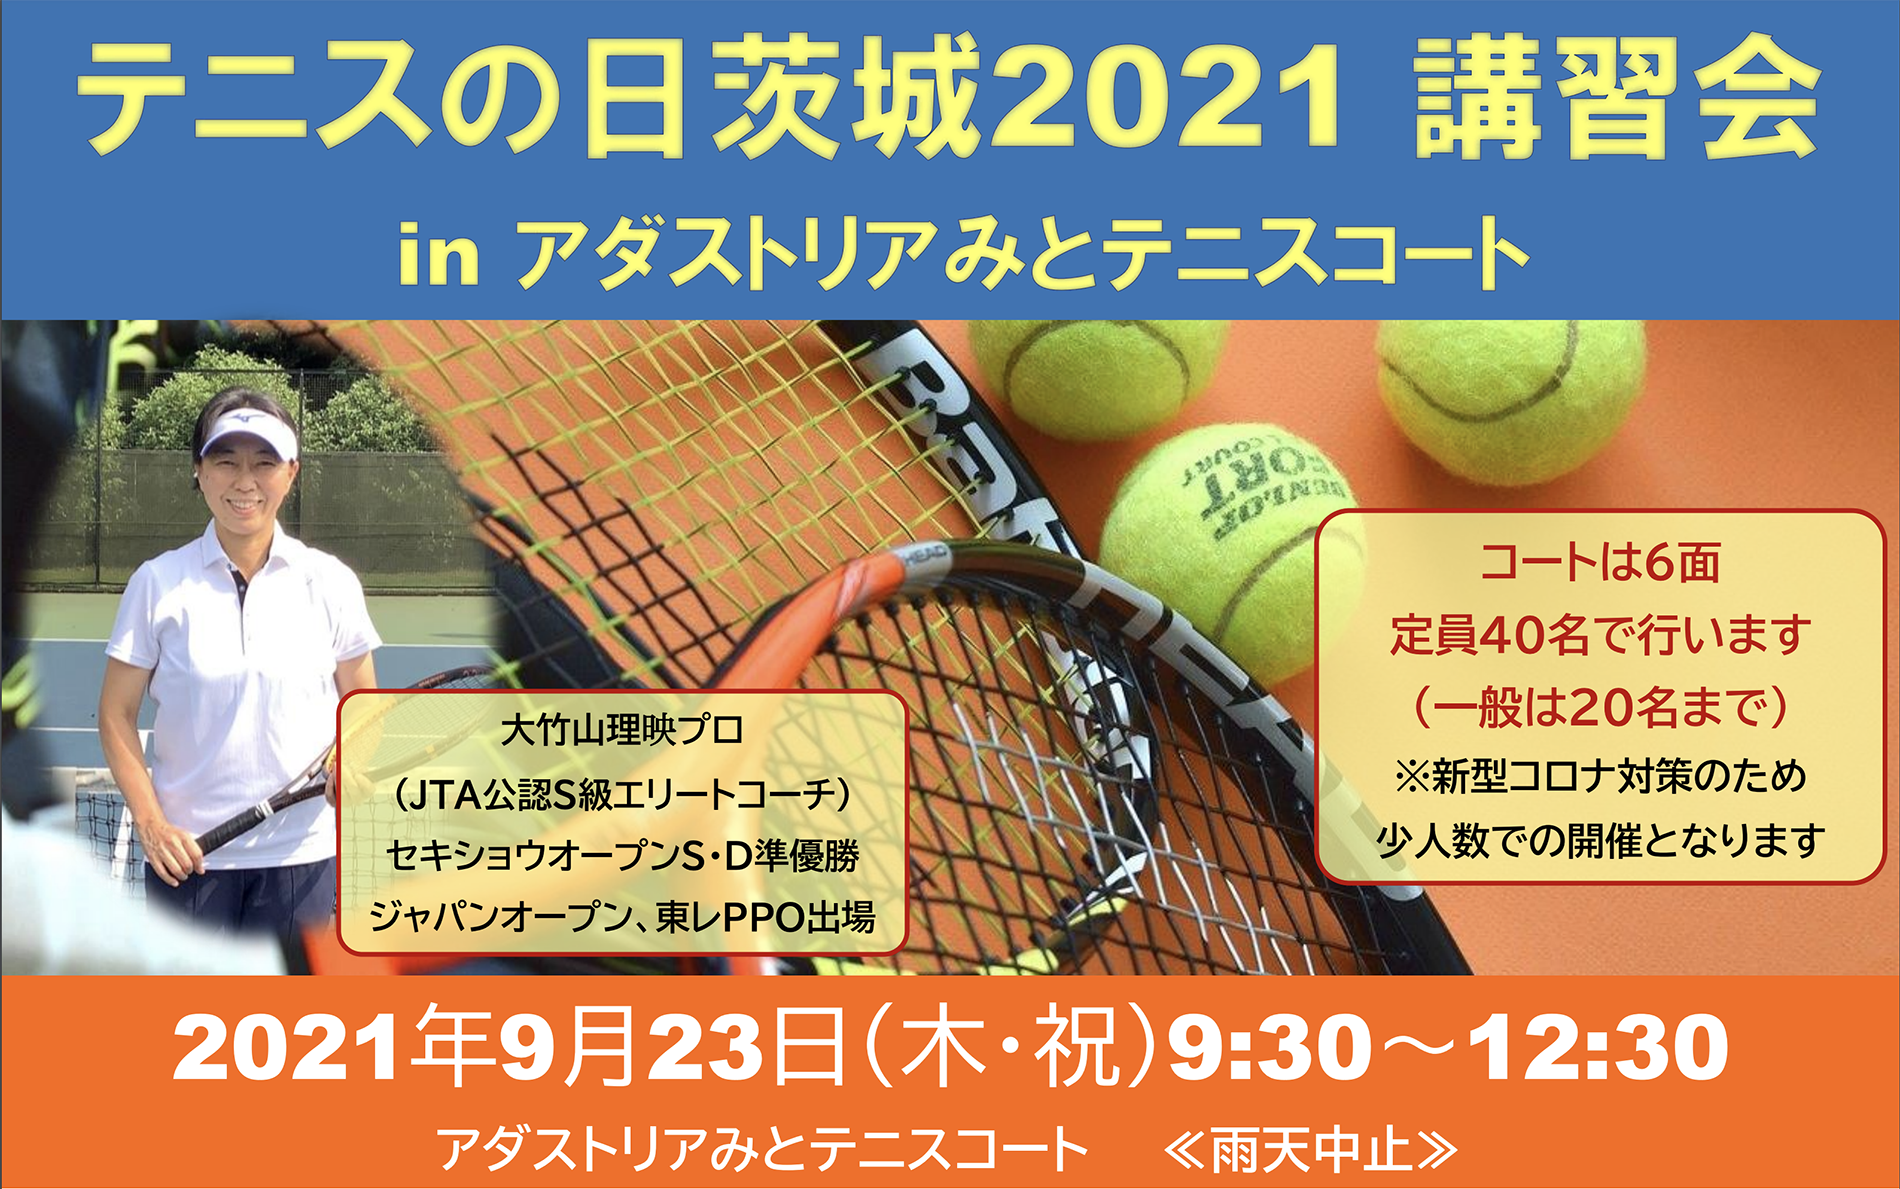 茨城県テニス協会普及指導委員会 テニスの日 21 Tennis Day 21